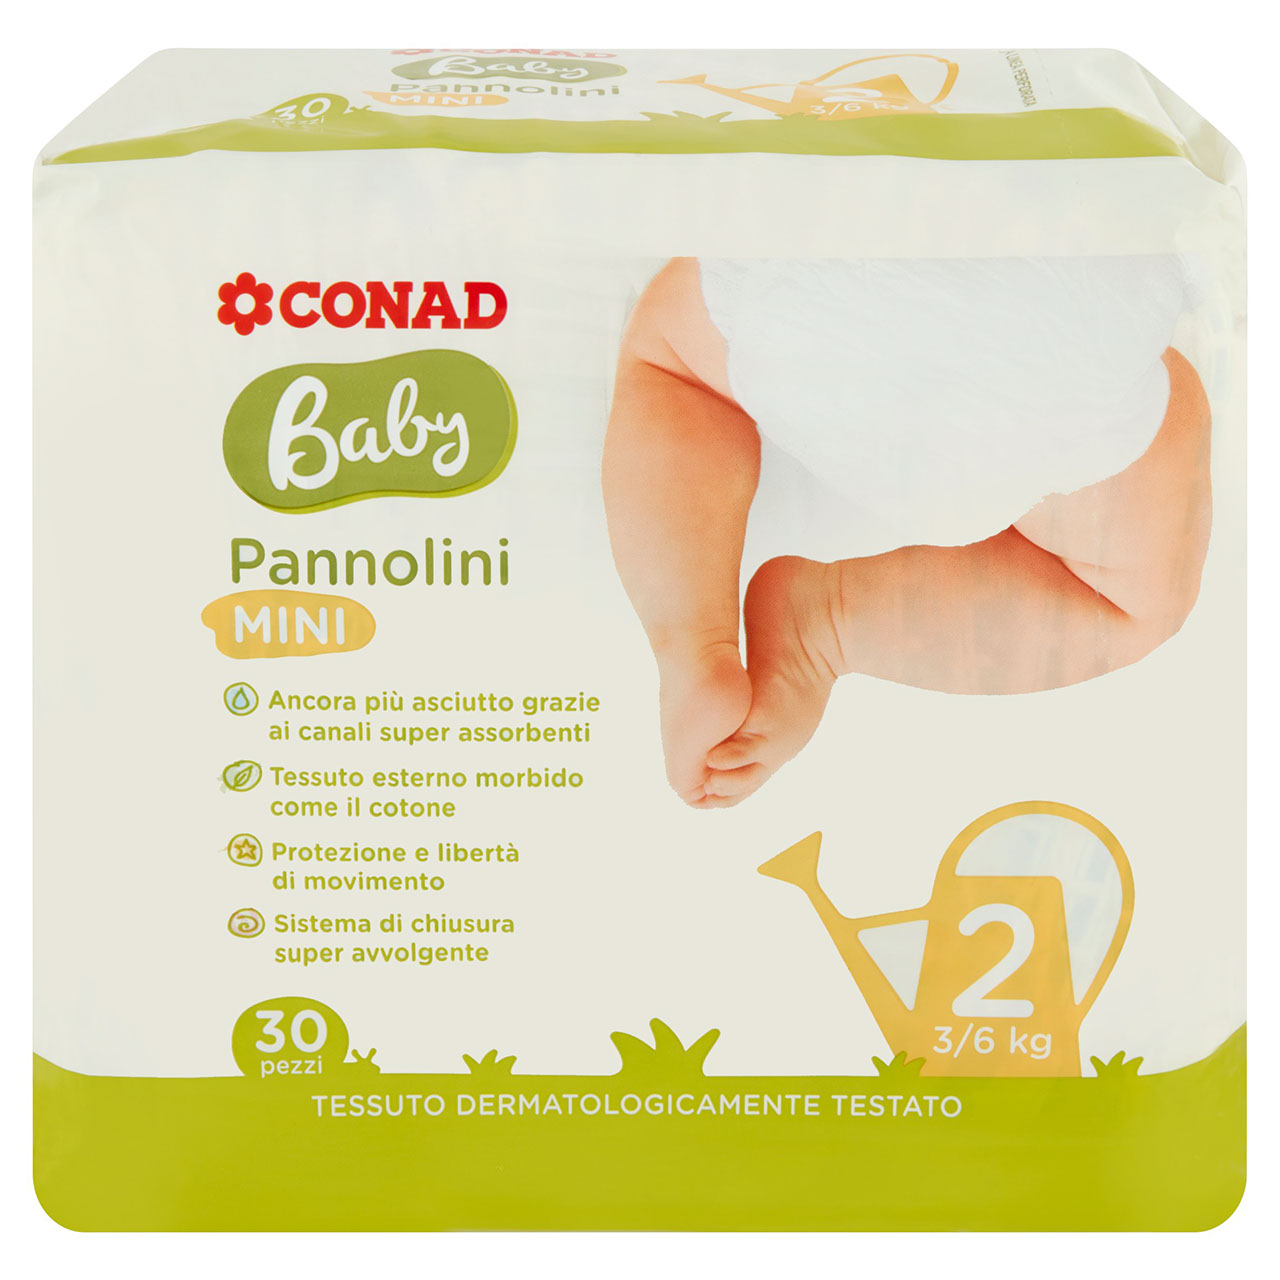 Baby Pannolini Mini 2 3/6 kg 30 Pezzi Conad online